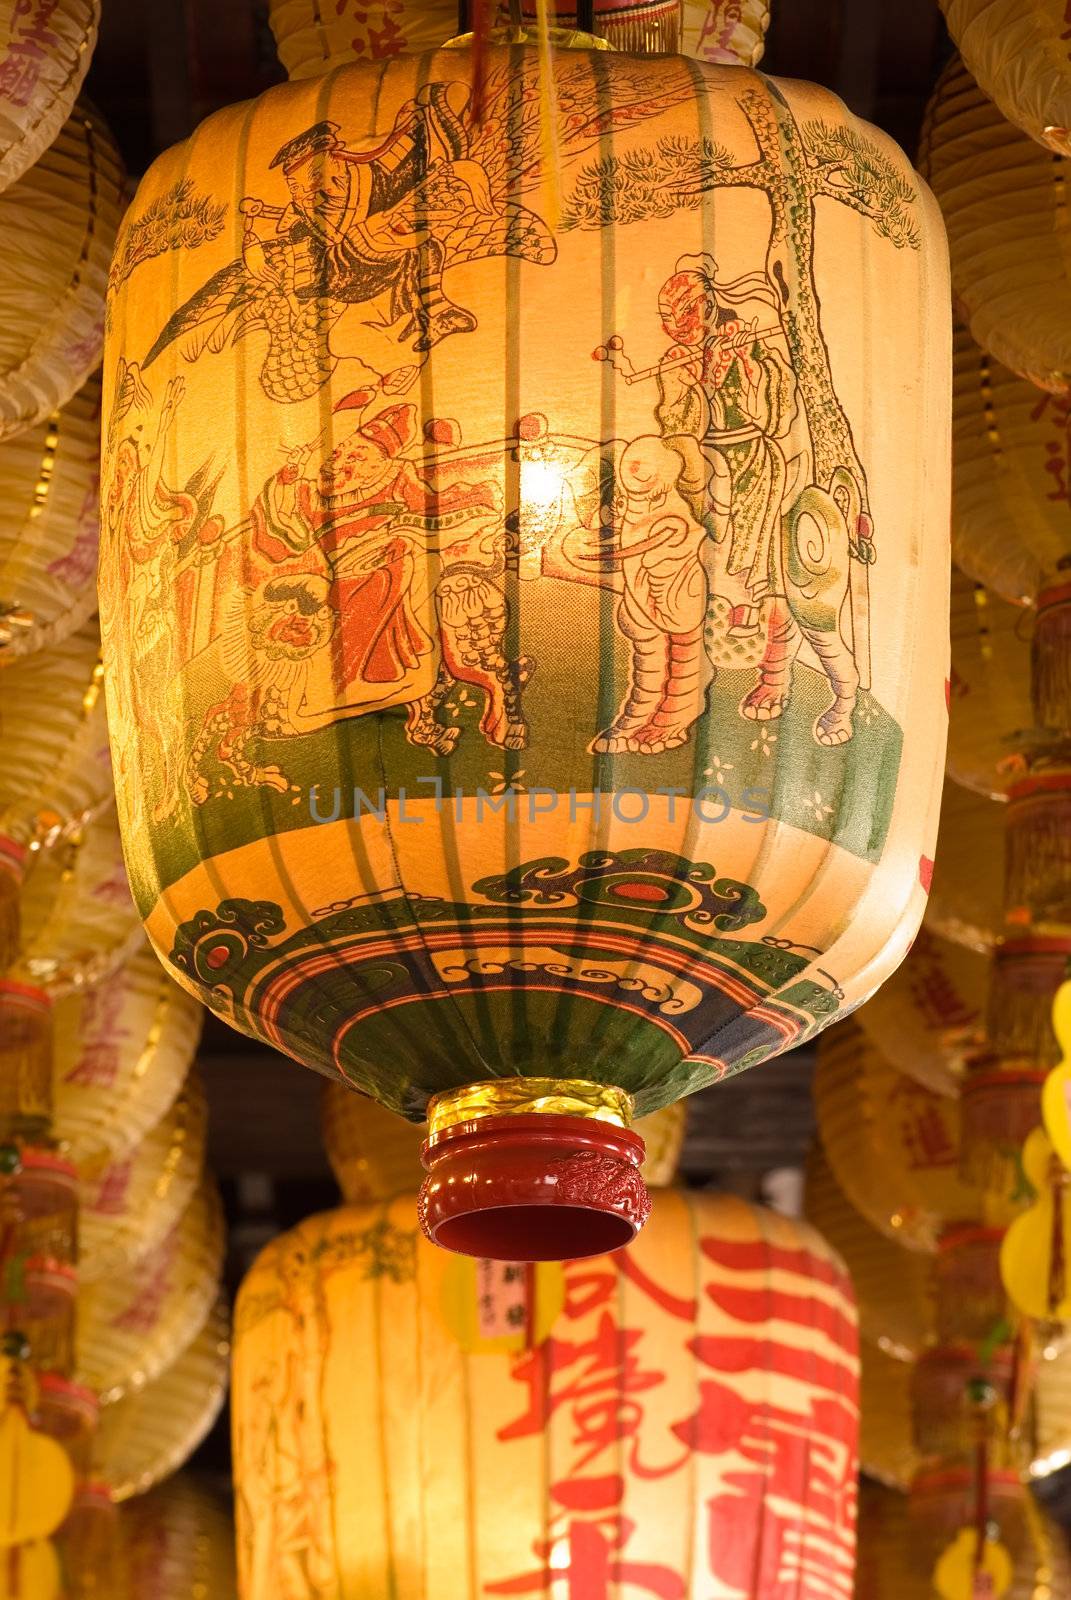 It is a big chinese yellow lantern.